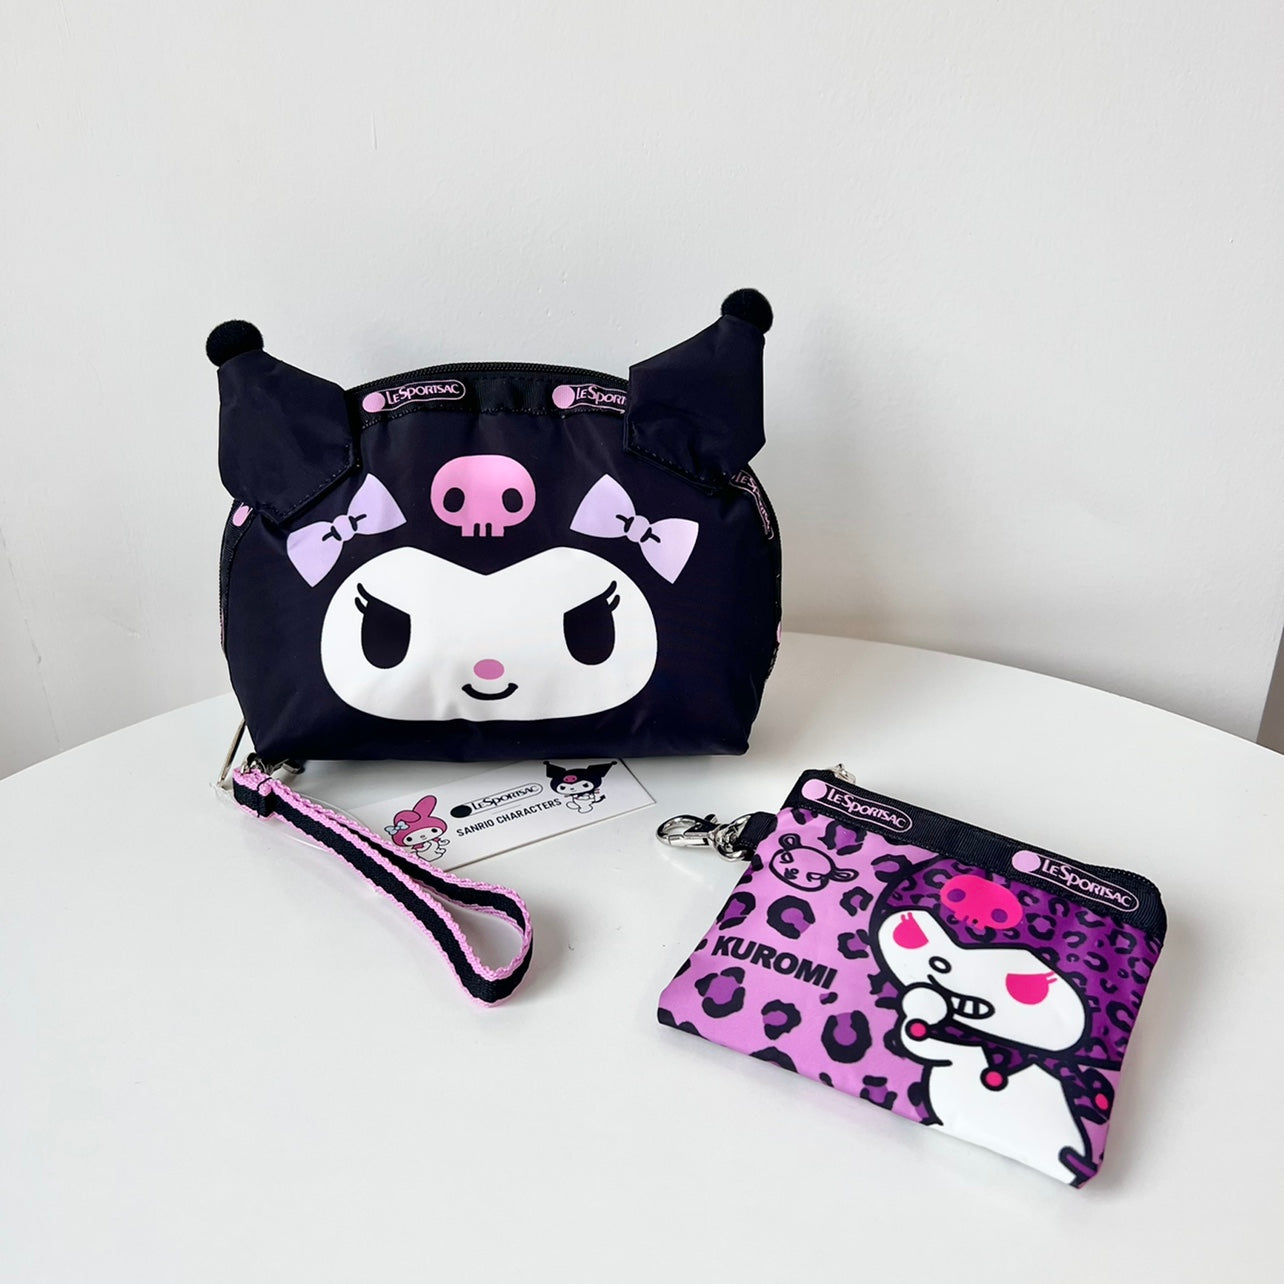 Kuromi Bag Women's Hand Bag Fashion Style Cute Clutch Makeup Bag